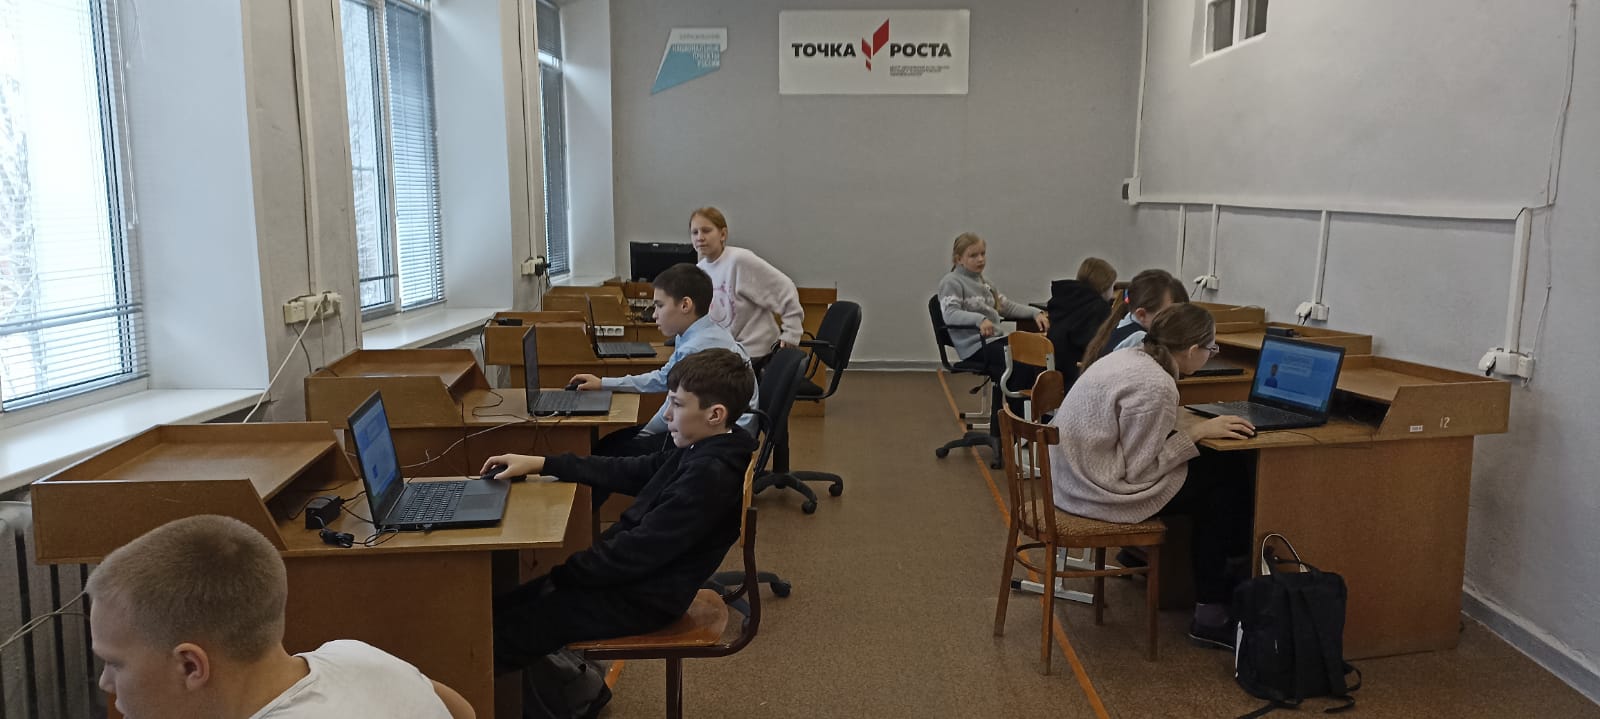 В течение первой недели  декабря на базе центра «Точка роста» для обучающихся 5-9,11 классов прошёл Урок цифры - Всероссийский образовательный проект в сфере информационных технологий..